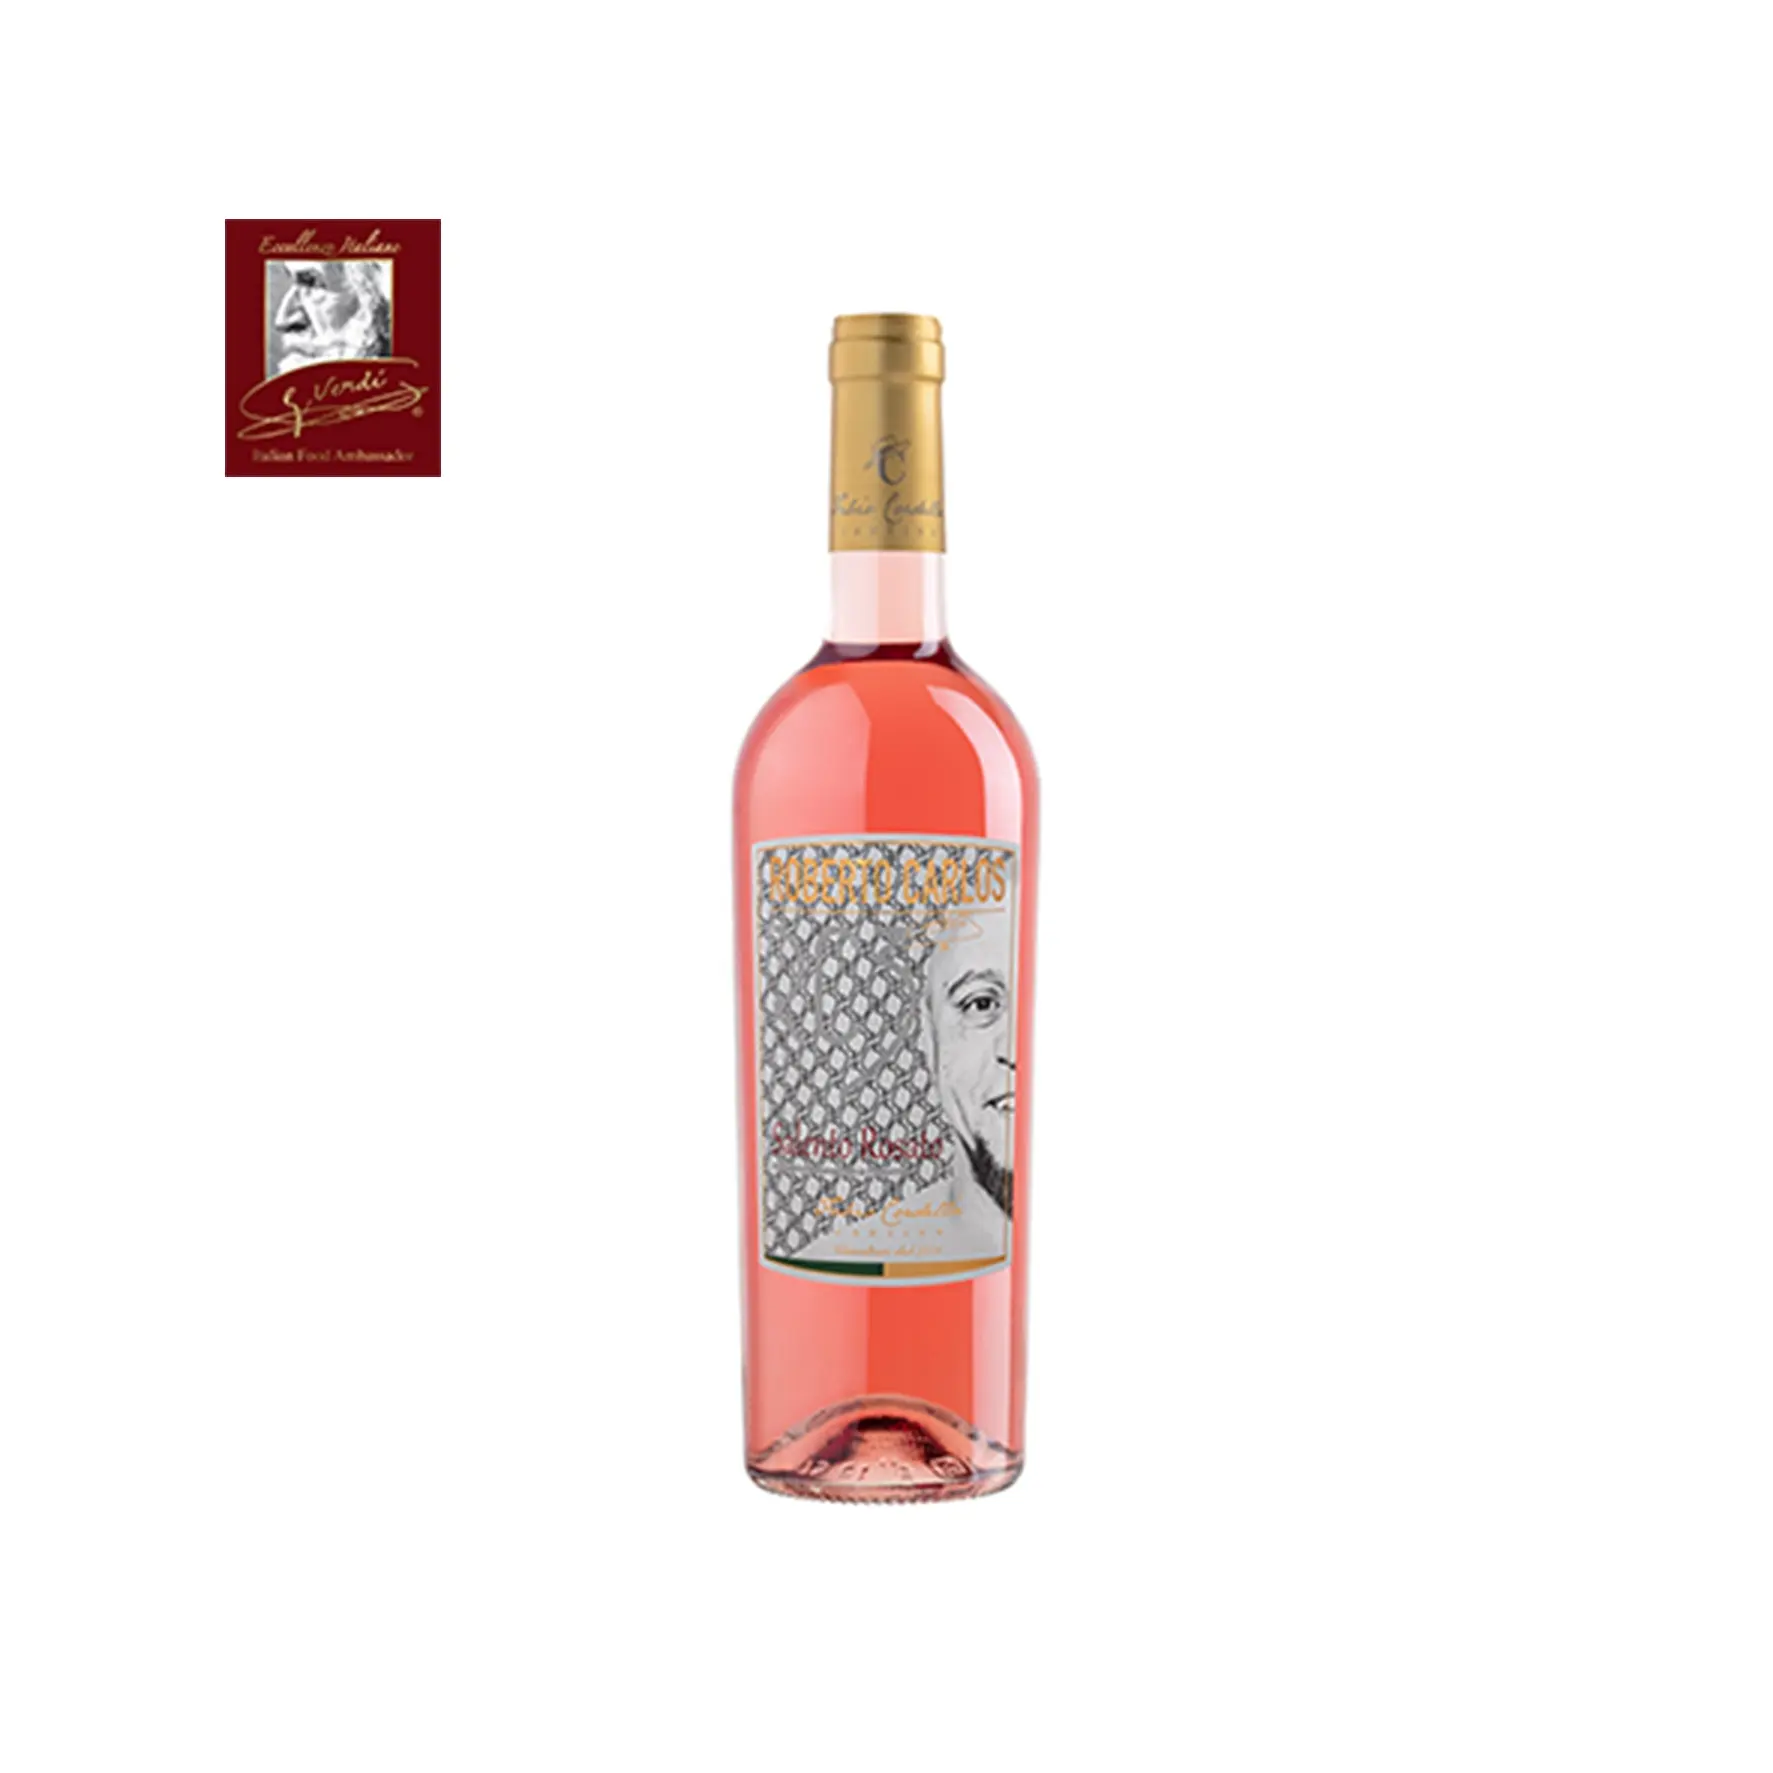 روبيرتو كاروس RC3 نبيذ إيطالي سالنتو IGP Rose lliters نبيذ بطل اختيار GVERDI صنع نبيذ وردي إيطالي